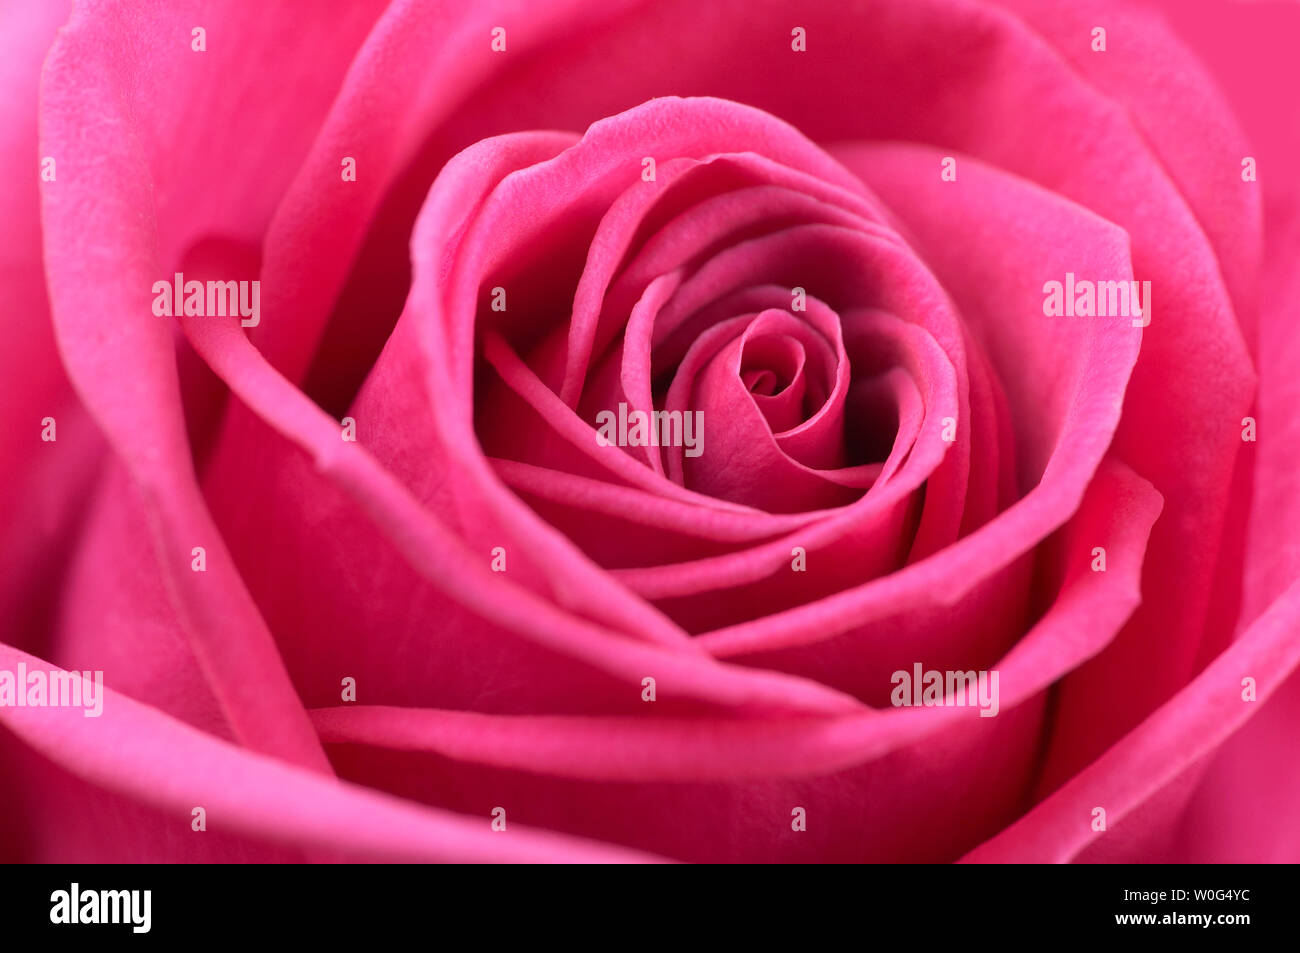 Full frame image of pink rose flower Stock Photo